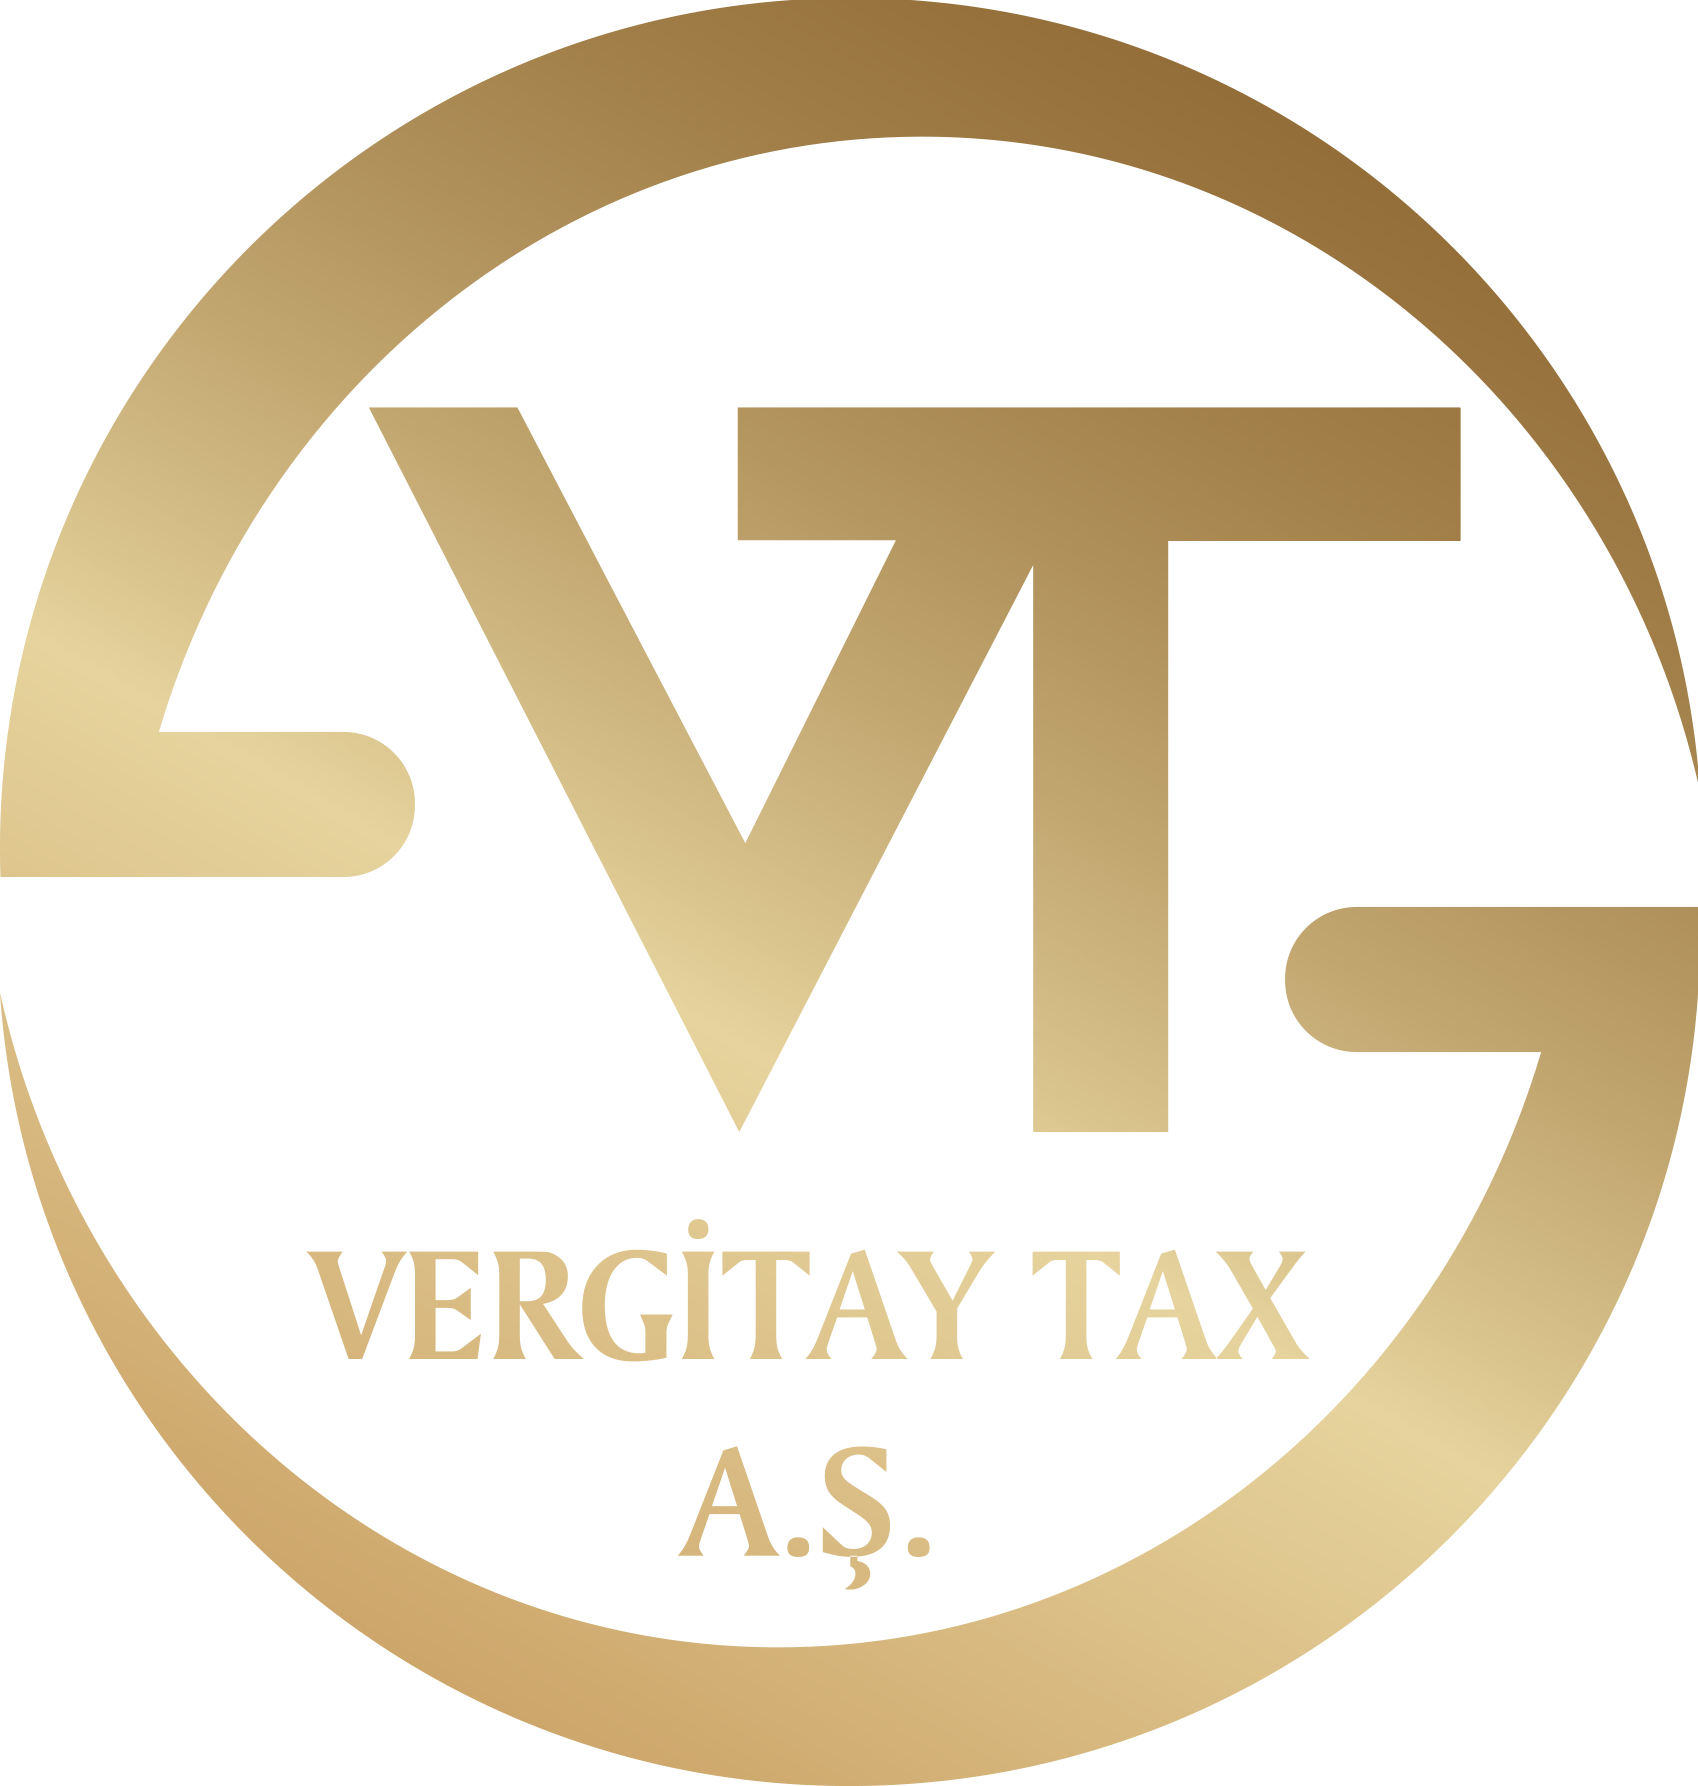 Vergi Avukatı, Vergi Avukatları, Vergi Uzmanı, En İyİ Vergi Avukatı, En İyi Vergi Avukatları, Türkiye'nin En İyi Vergi Avukatı, Vergi Uyuşmazlıklarında Danışmanlık, Vergi İncelemelerinde Danışmanlık, Vergi İhtilaflarında Danışmanlık, Konkordato Danışmanlığı